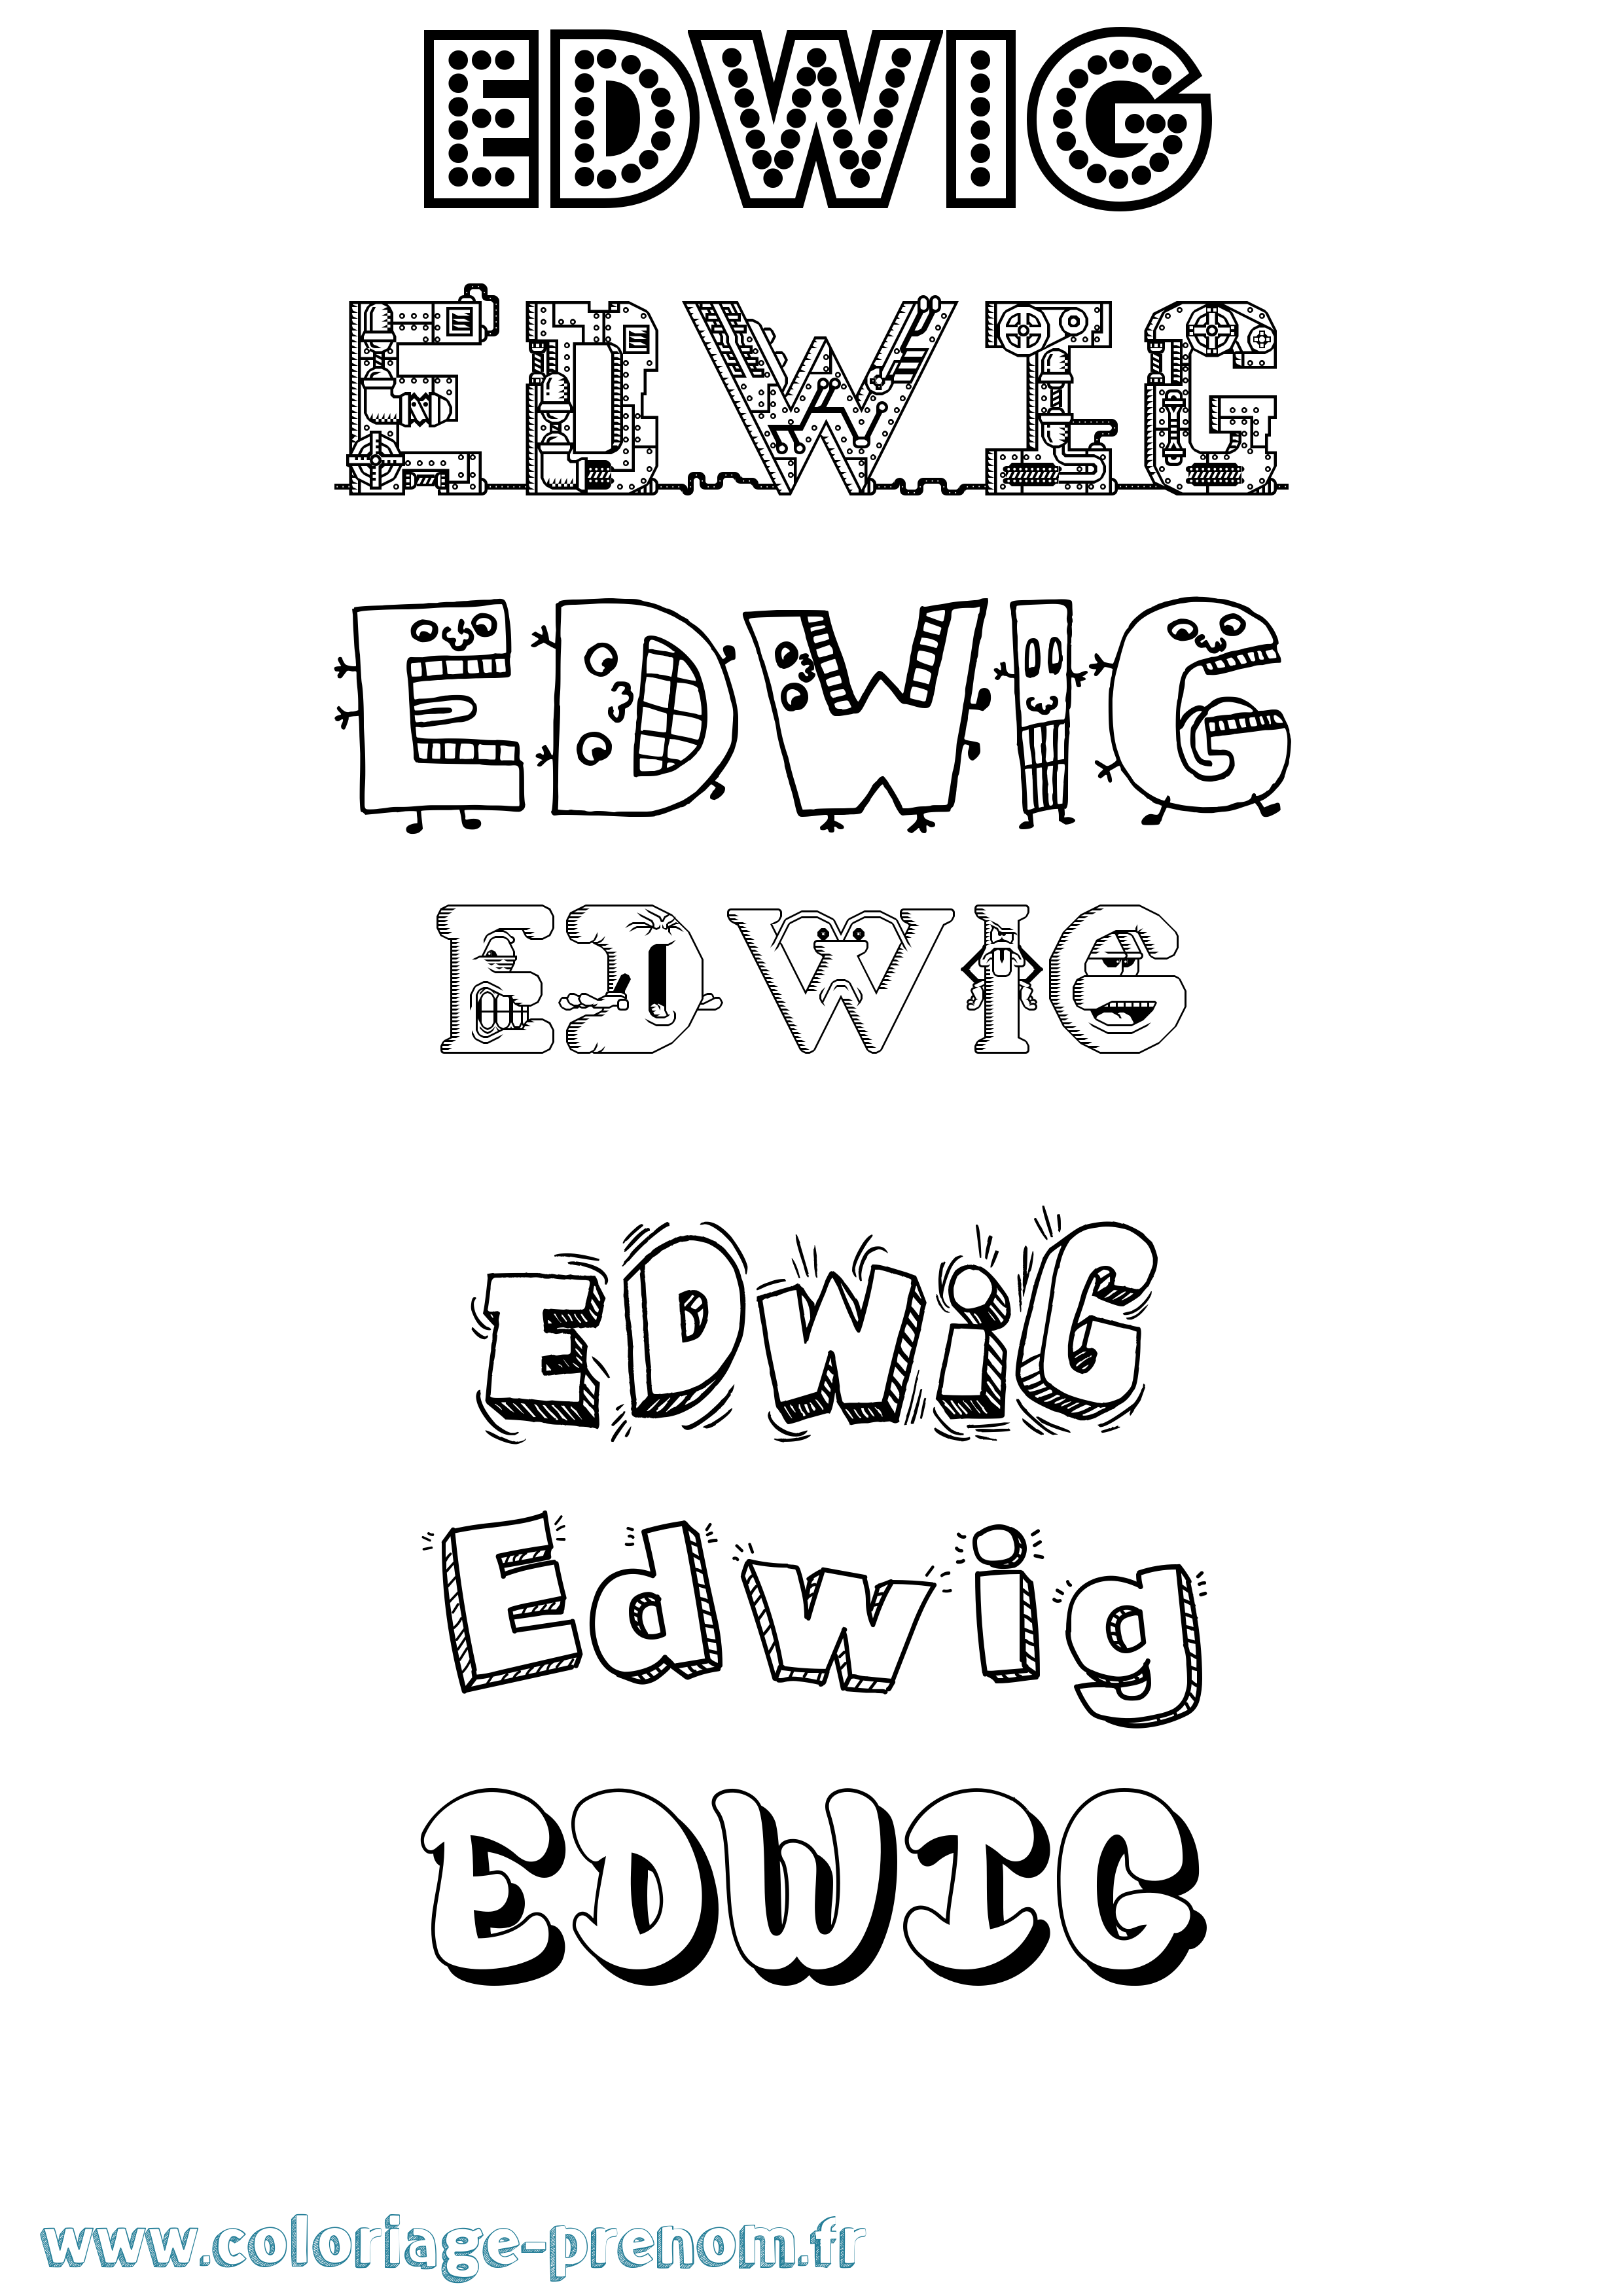 Coloriage prénom Edwig Fun